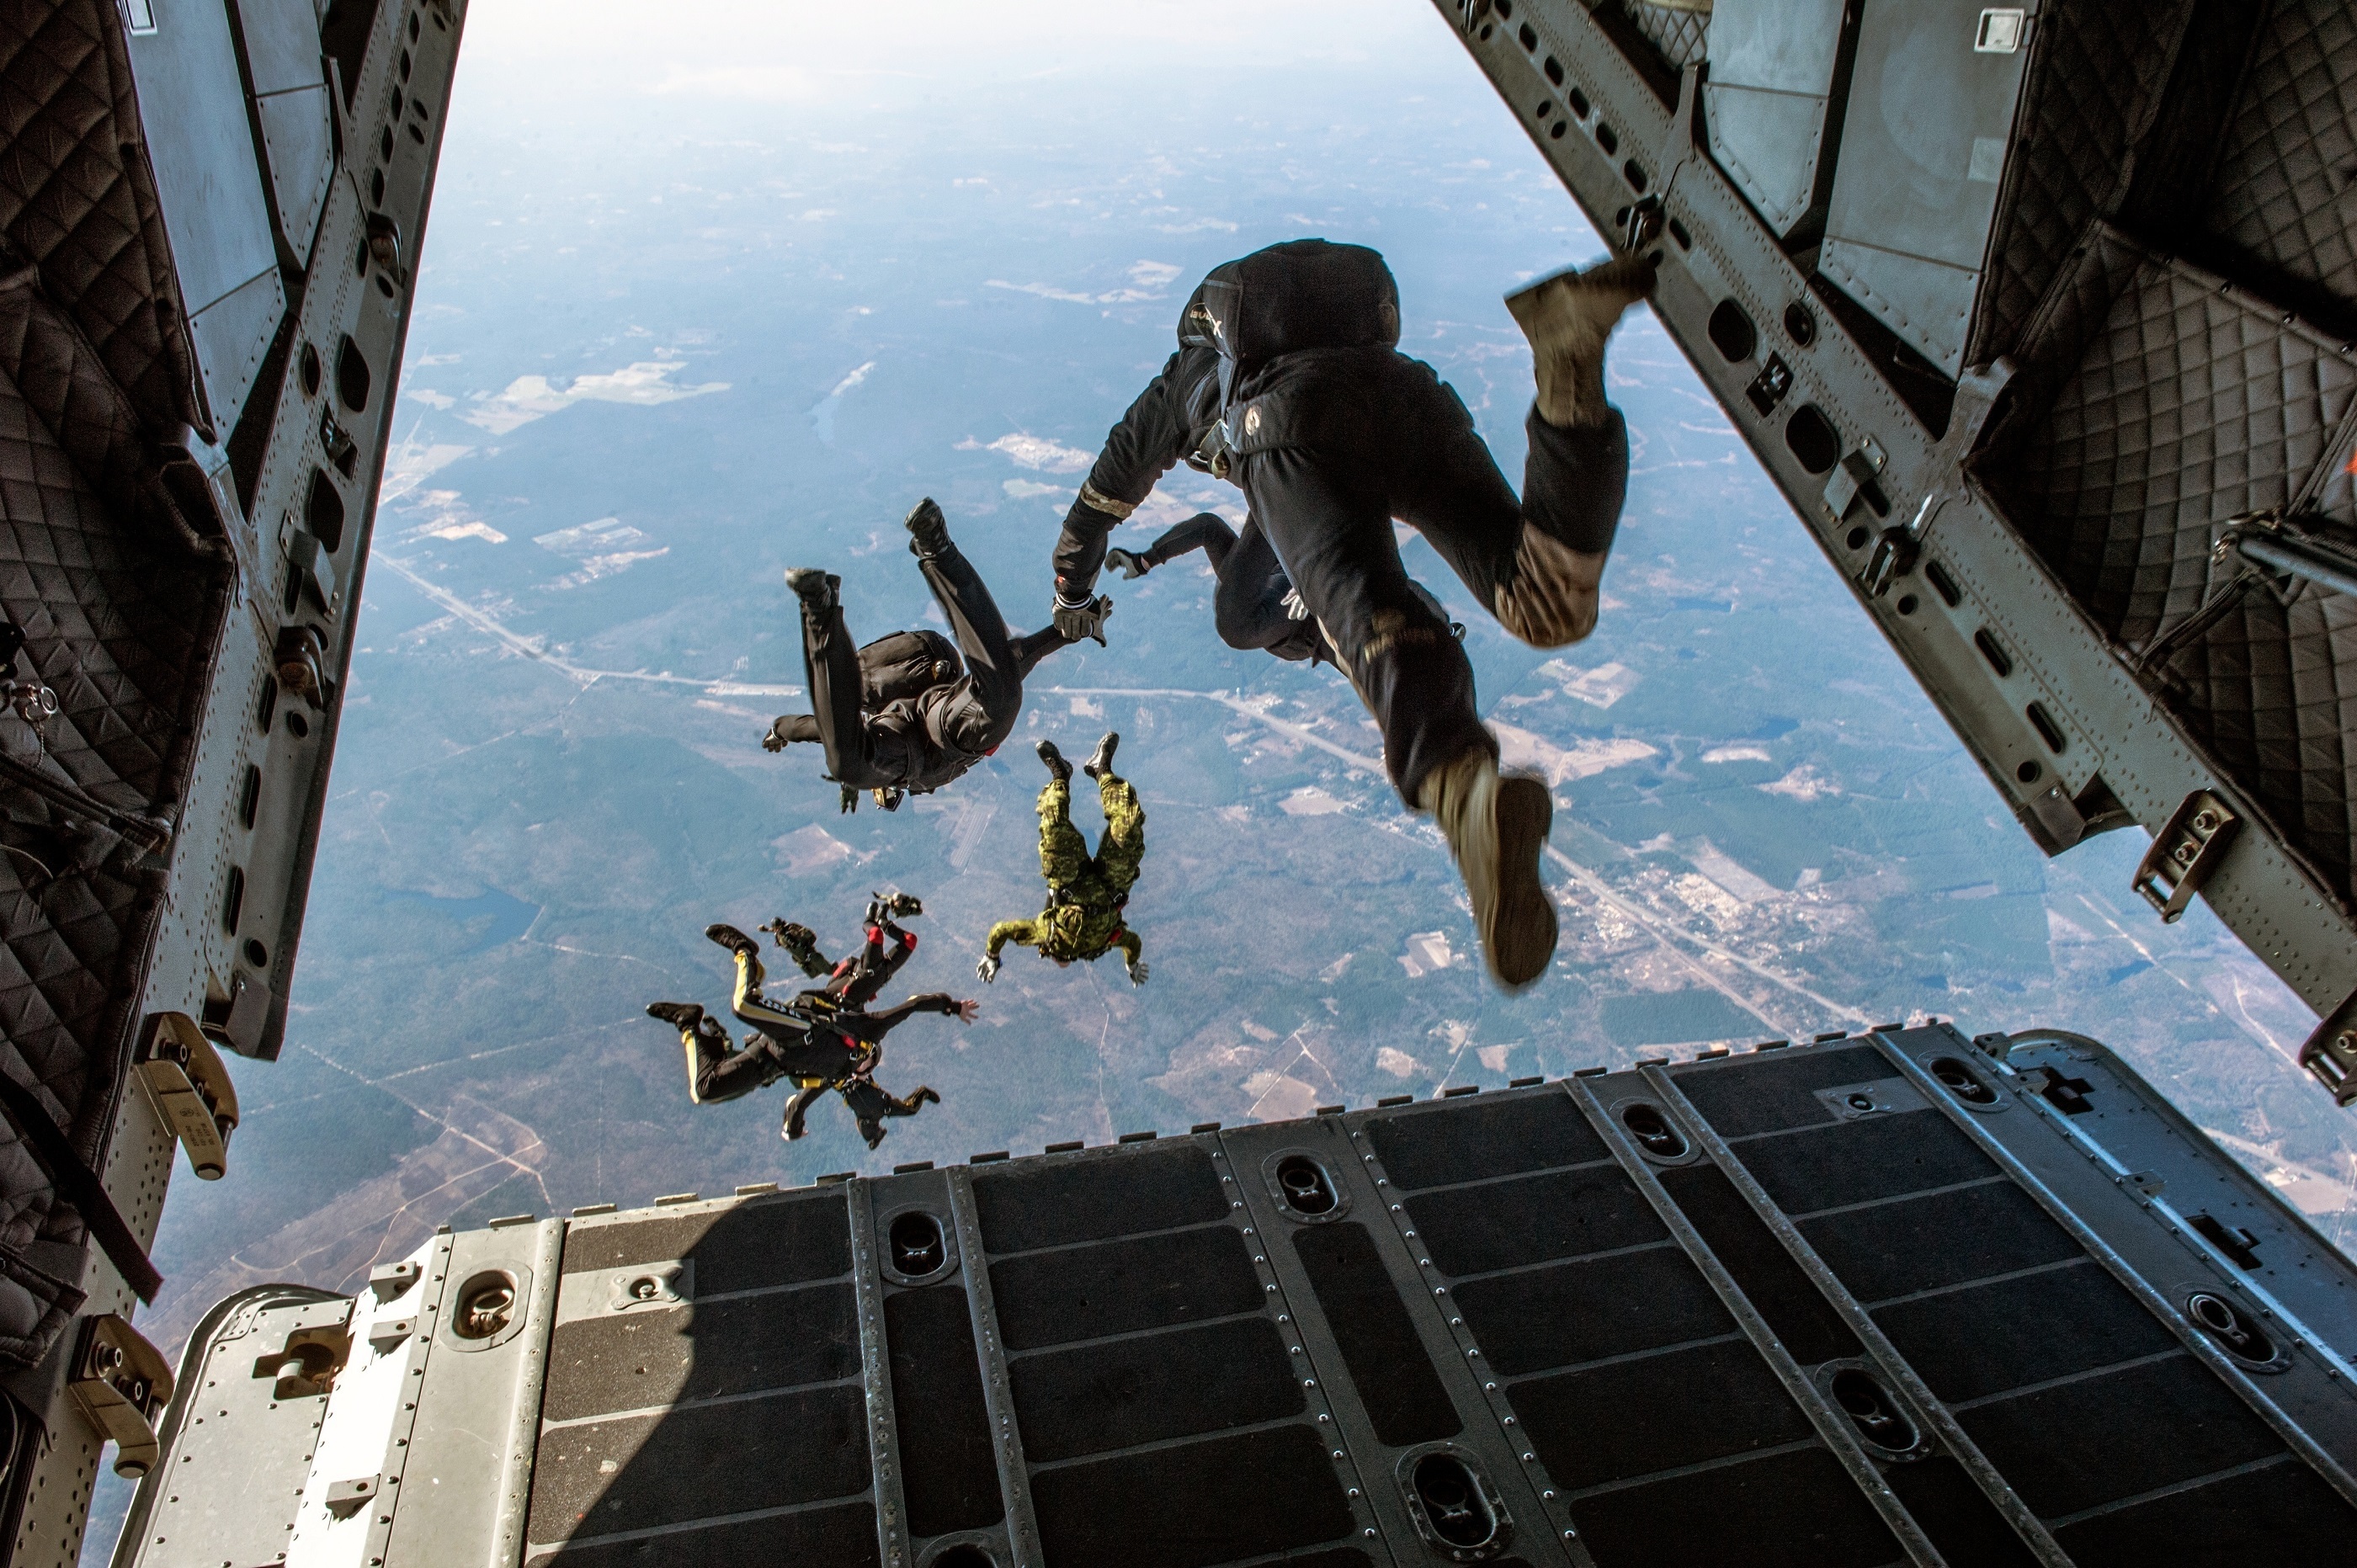 Parachute jumping photo